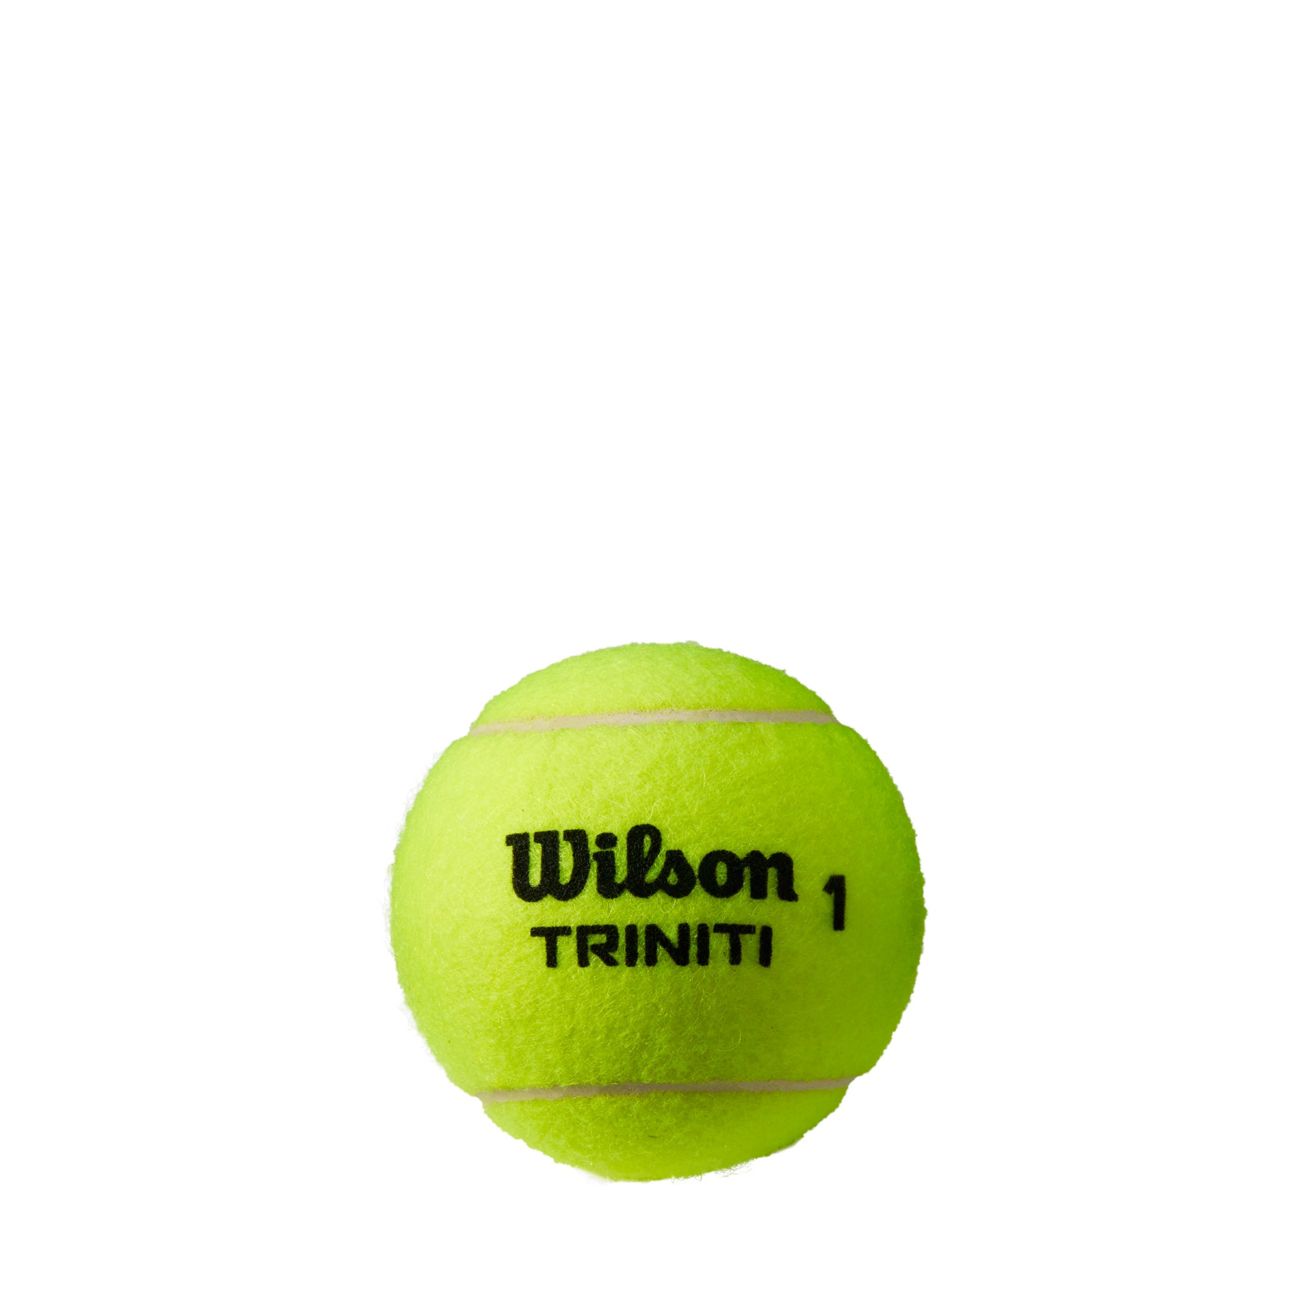 Wilson lanza la primera bola de tenis diseñada de forma sostenible -  Diffusion Sport